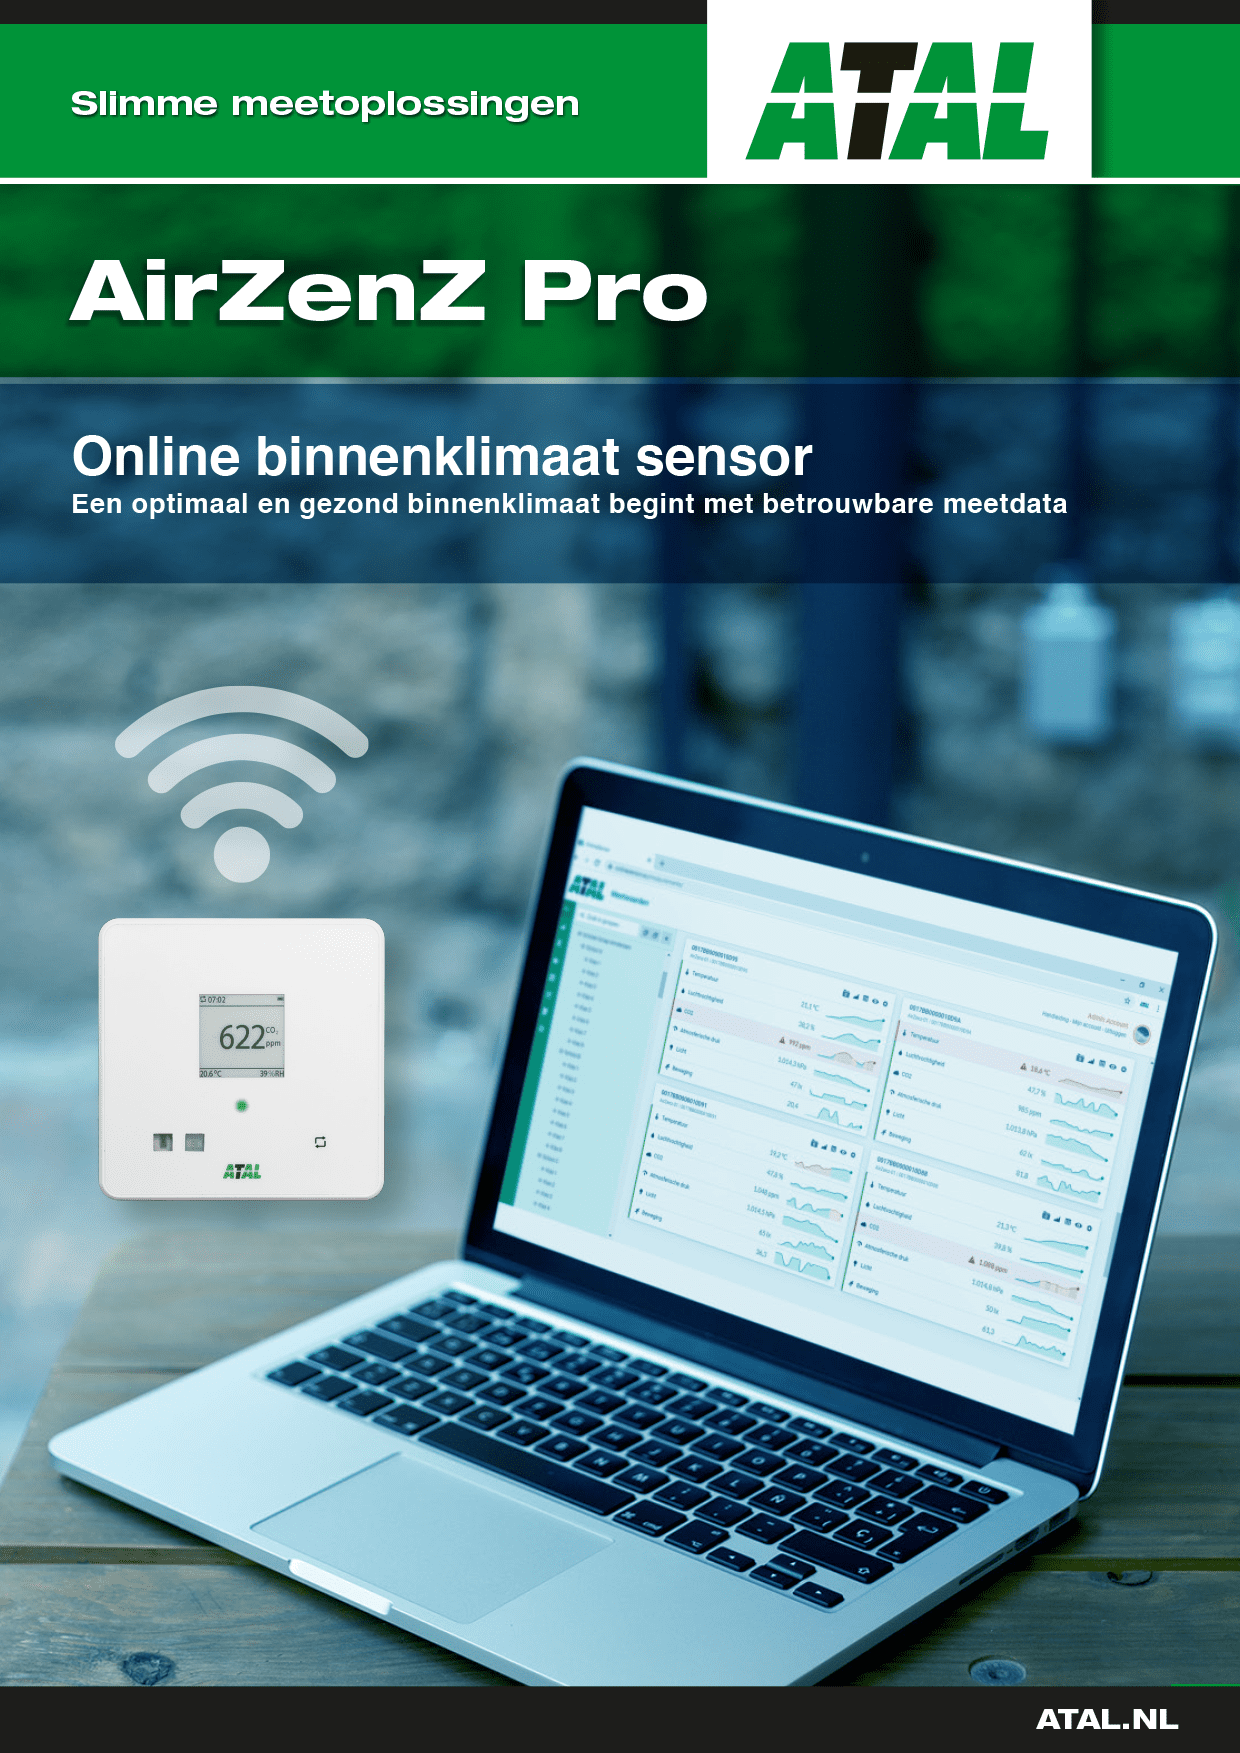 Atal brochure online binnenklimaat sensor voor een optimaal en gezond binnenklimaat, dat begint met betrouwbare meetdata